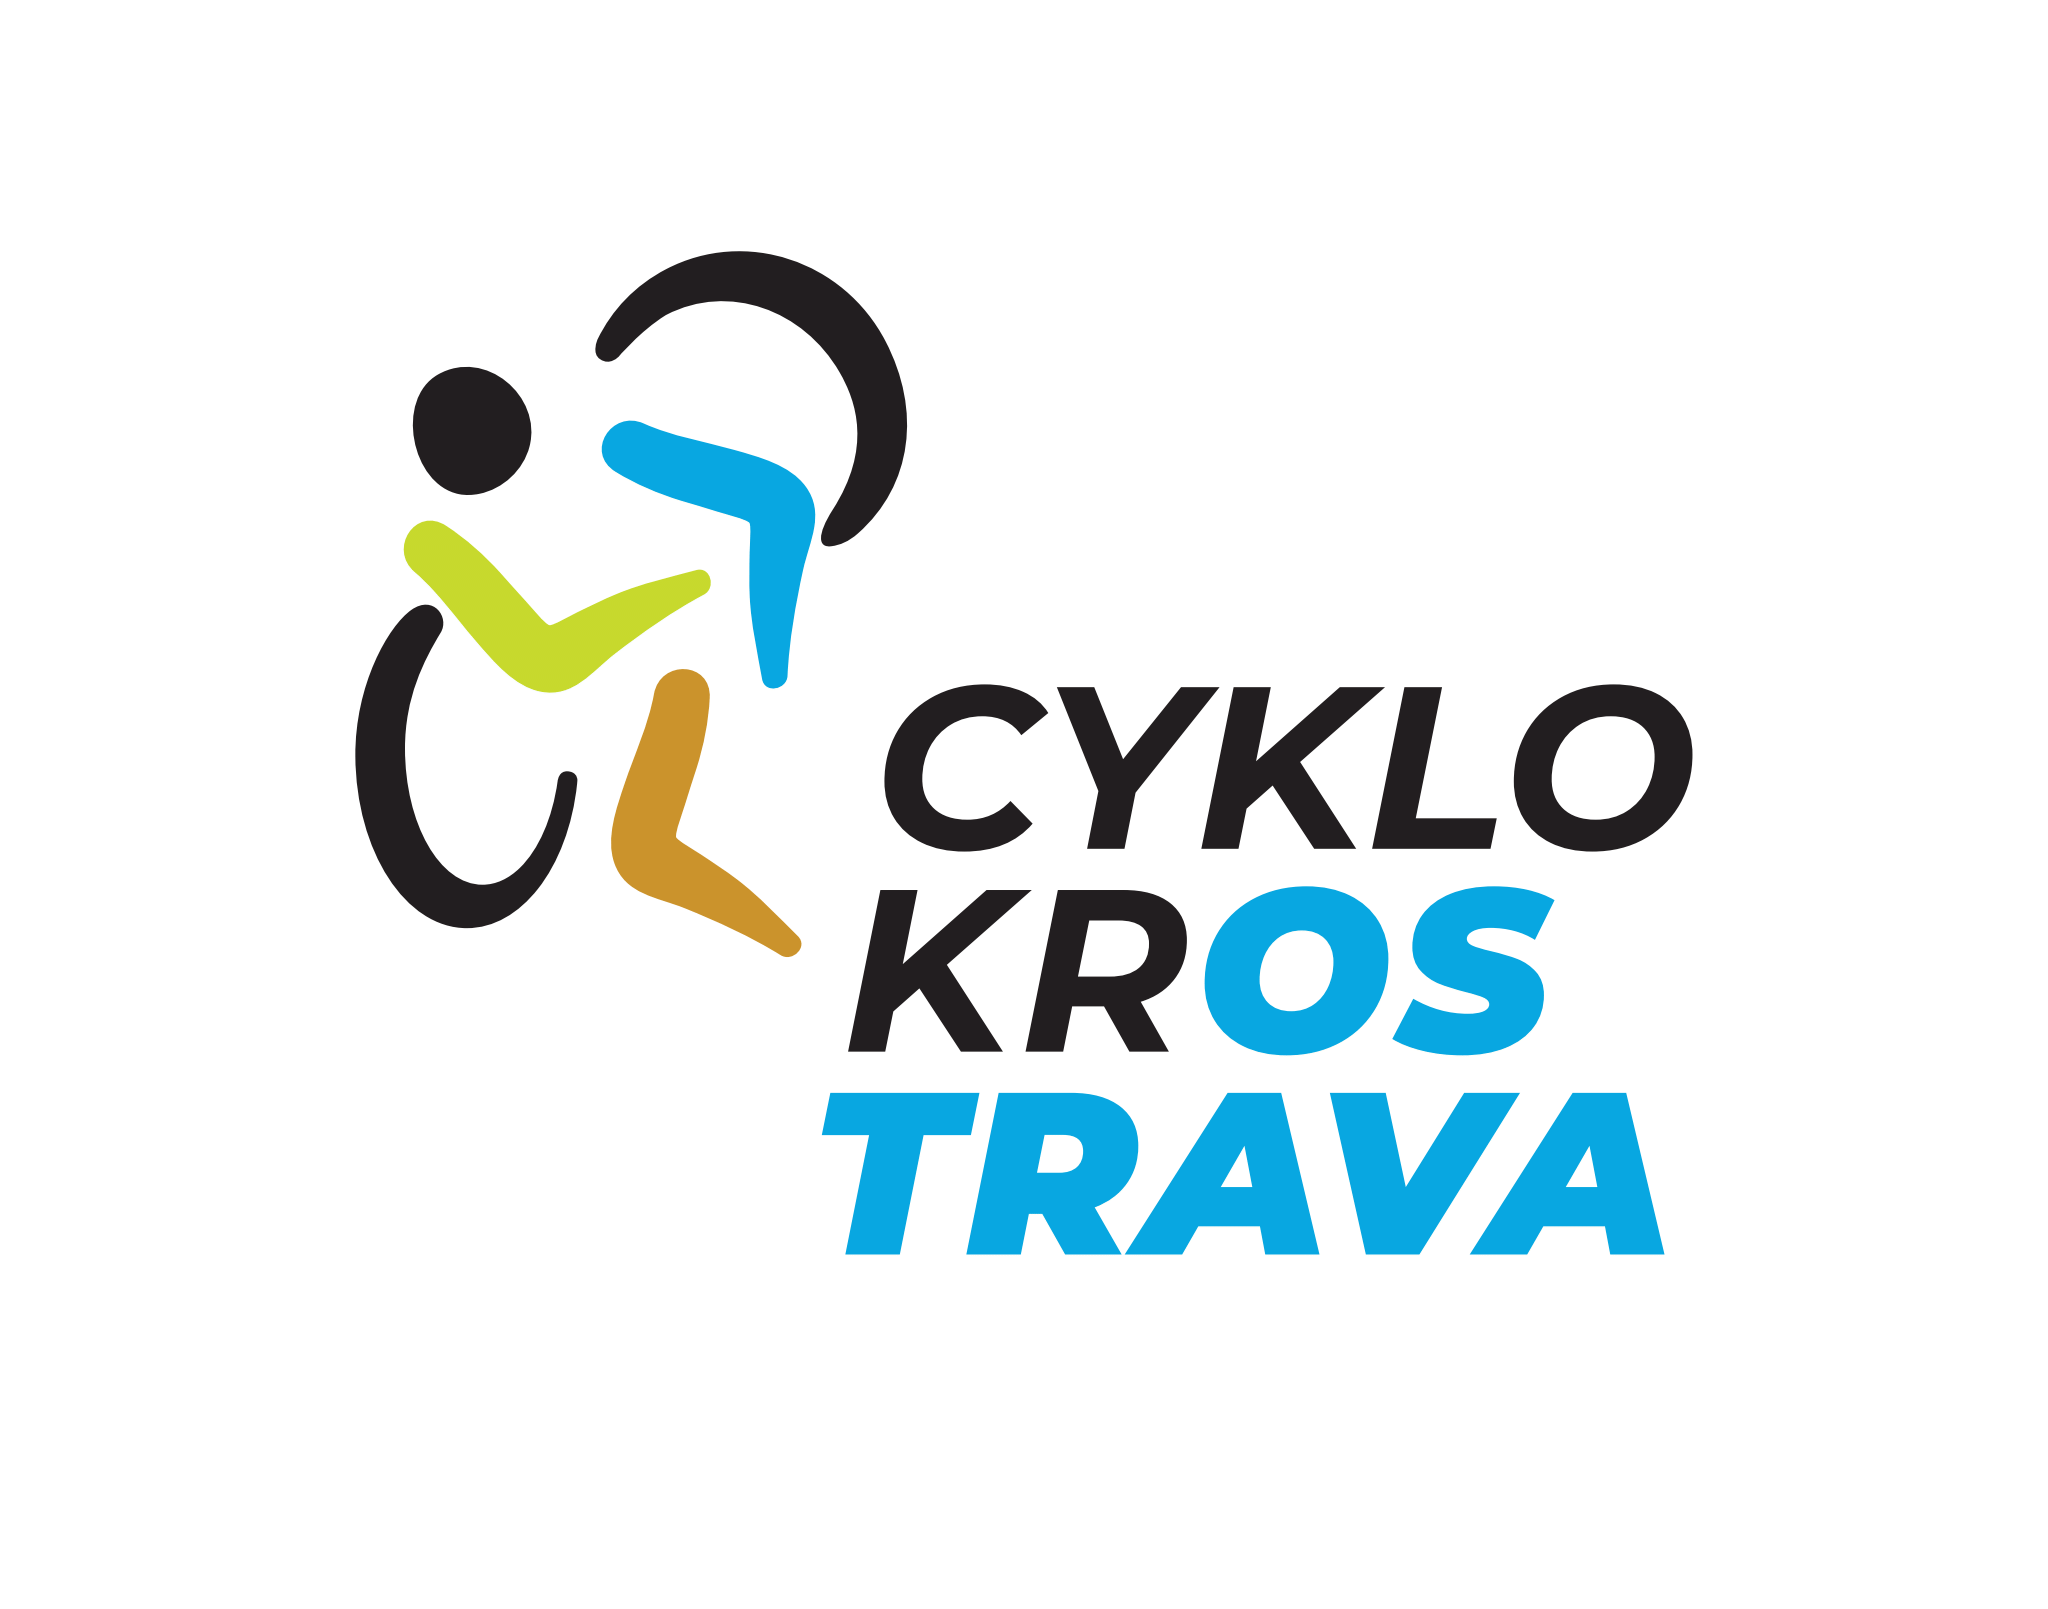 Cyklokros Ostrava